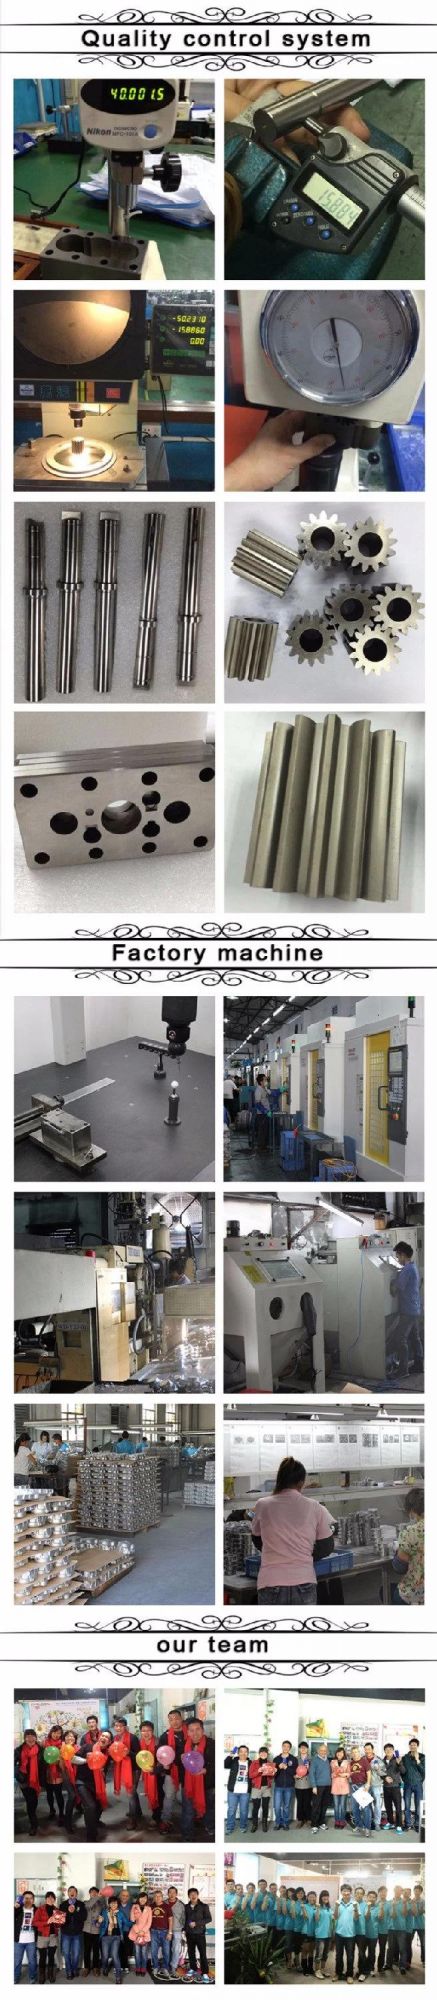 Shenzhen OEM CNC Machining Aluminum Parts Manufacturer, Aluminum 6061 7075 CNC Turning Parts, Customized CNC Machining Service